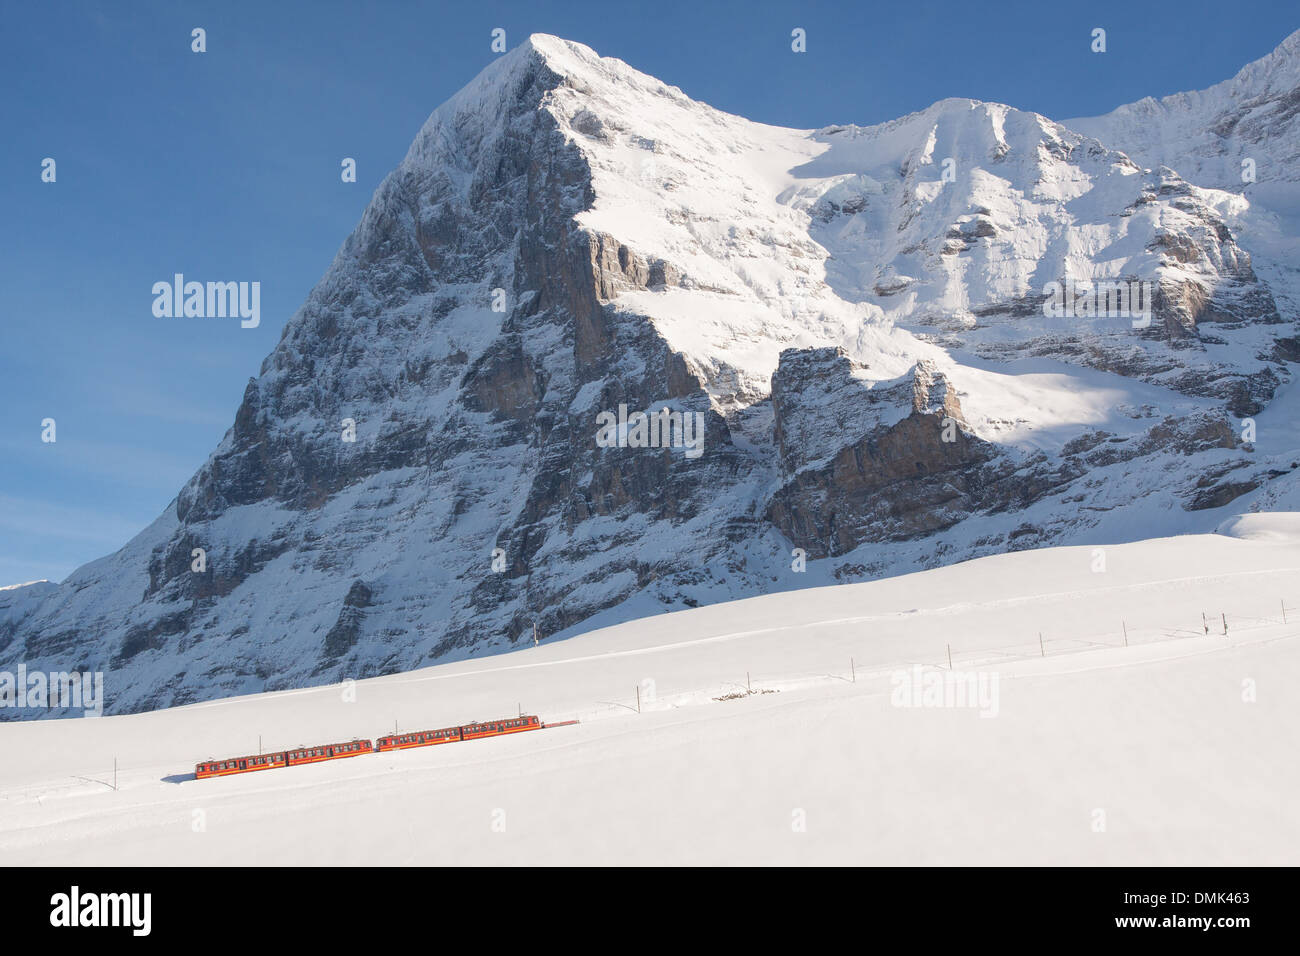 Vista invernale del treno della Jungfrau rendendo il suo modo attraverso la neve al vertice dell'Eiger, Alpi bernesi in inverno, il cantone di Berna, Svizzera Foto Stock